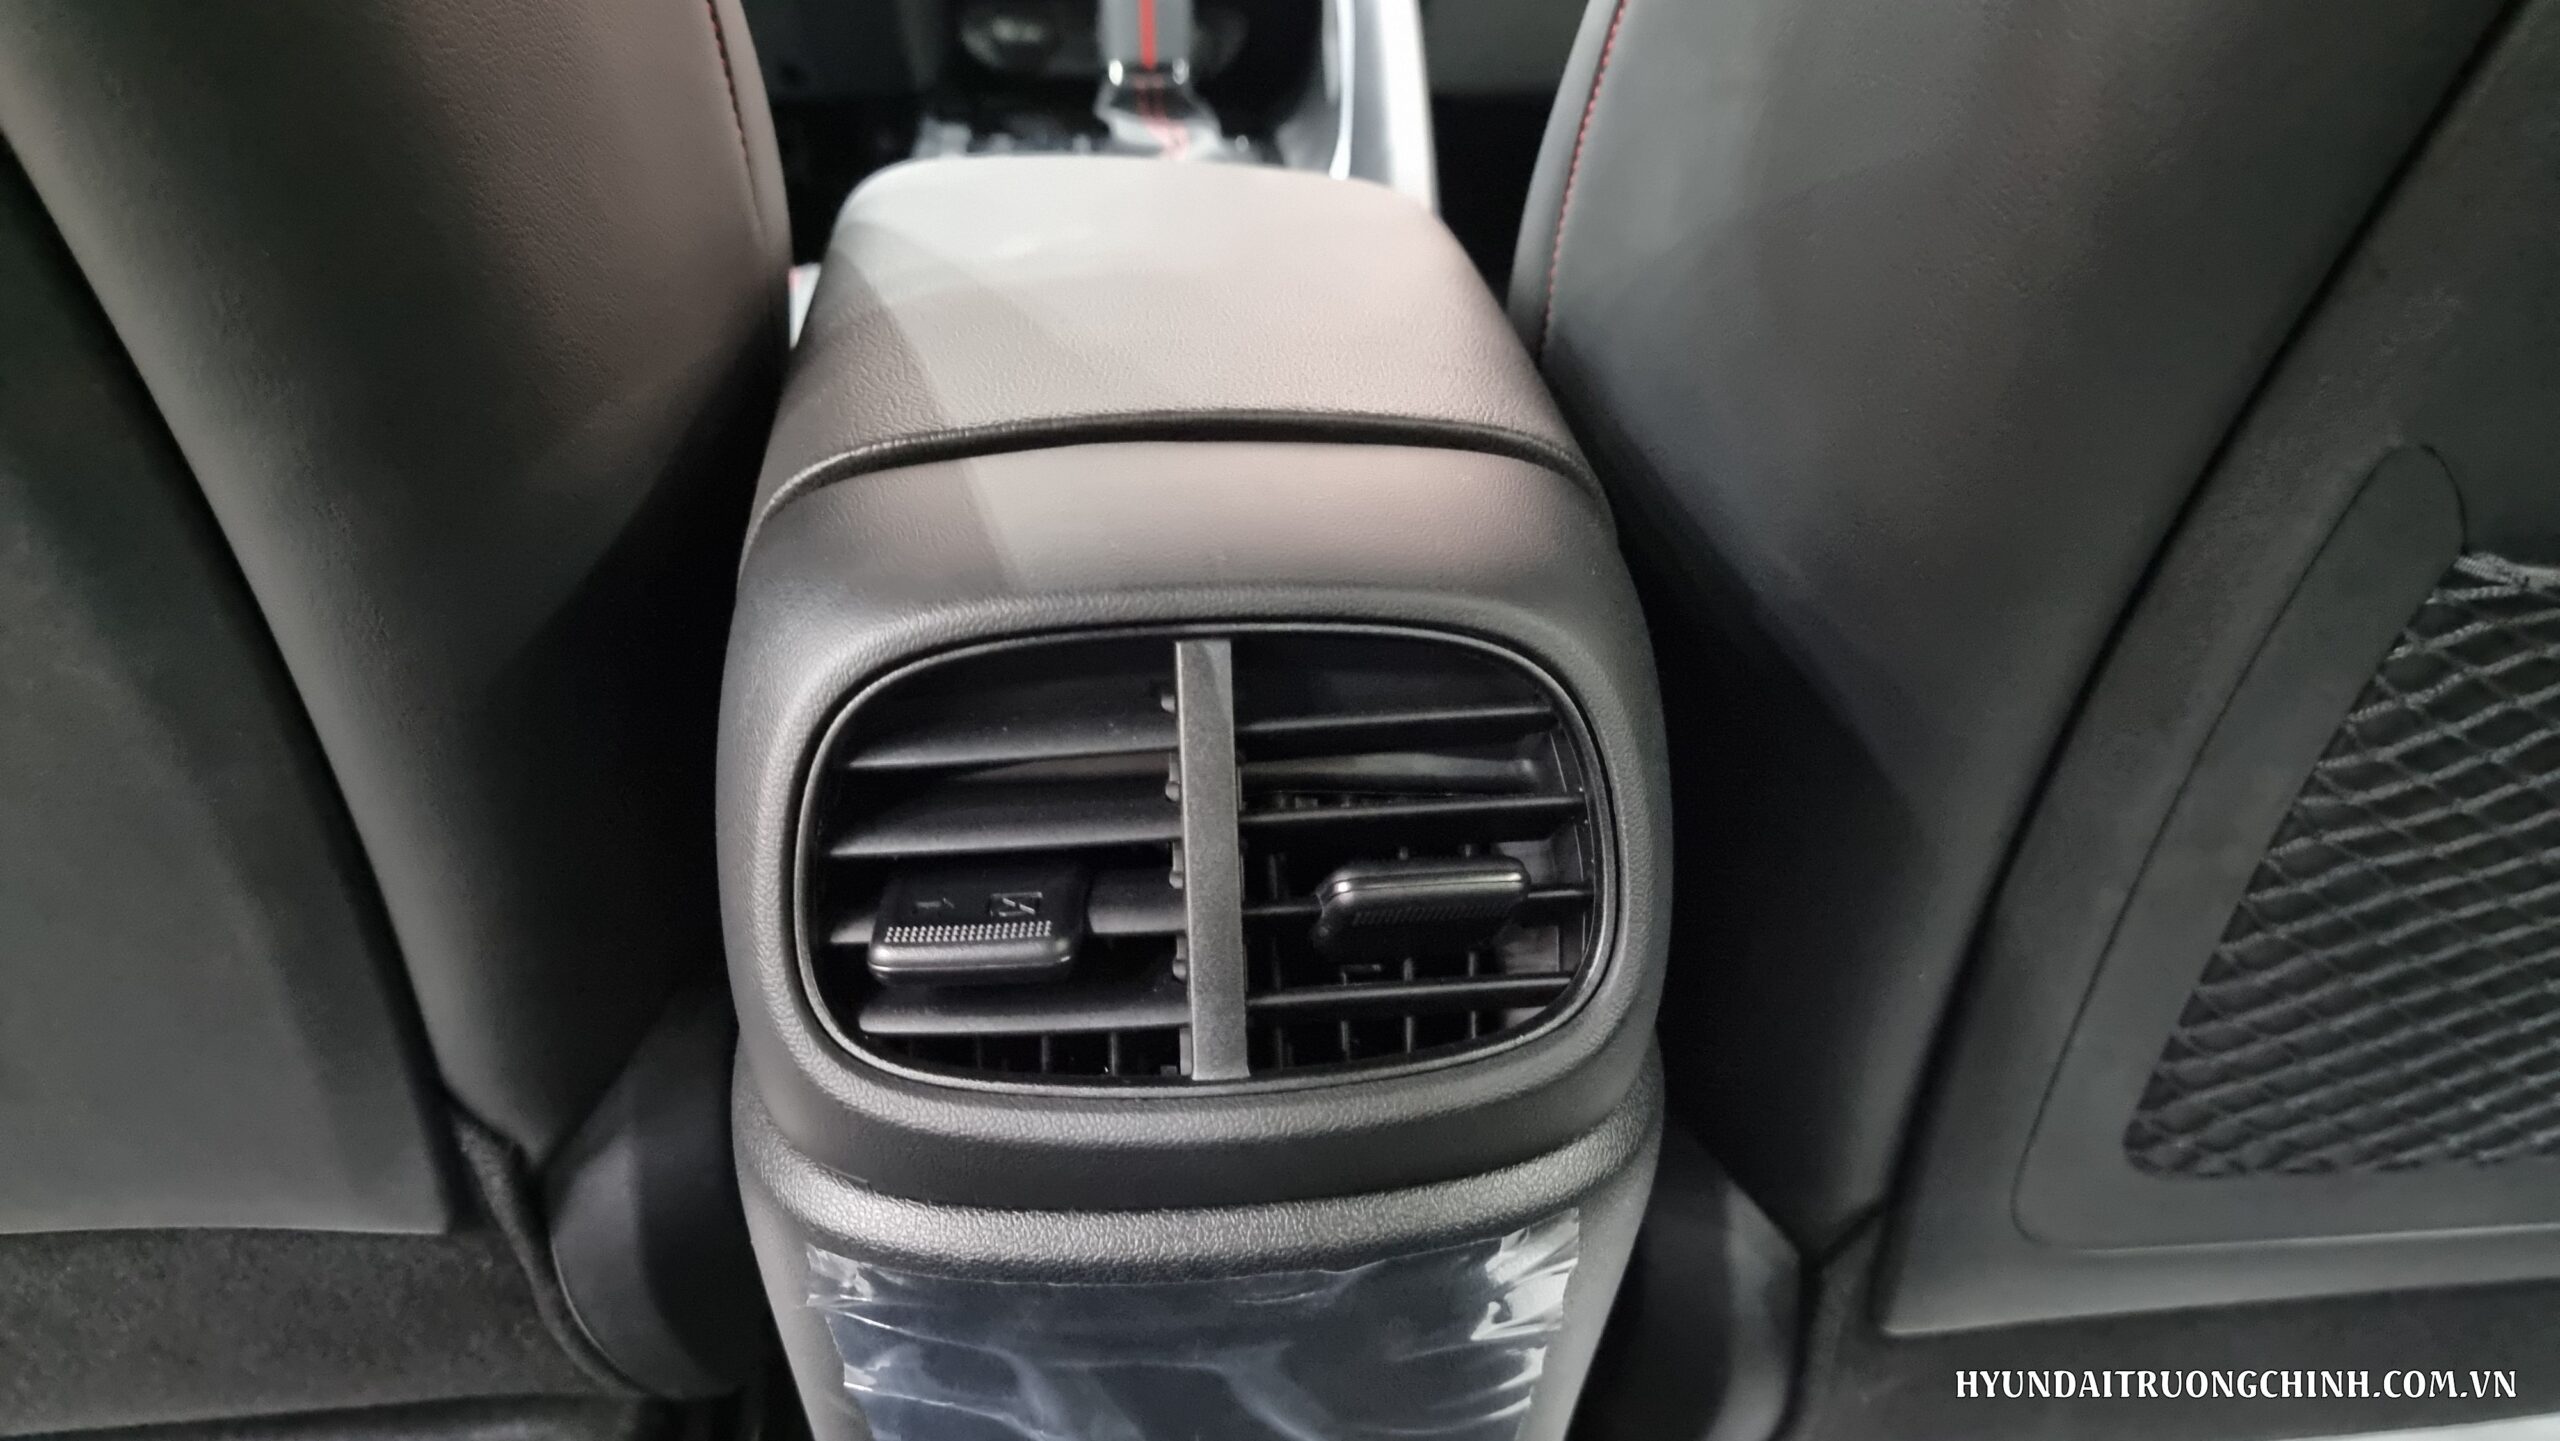 Hyundai elantra | Hệ thống điều hòa tự động 2 vùng trên Hyundai Elantra 2024 cho phép người lái và hành khách phía trước có thể điều chỉnh nhiệt độ và luồng không khí riêng biệt cho từng vùng trong cabin, tạo sự thoải mái và thoáng đãng. Điều này giúp cải thiện trải nghiệm lái xe và sự thoải mái cho các hành khách trong xe.